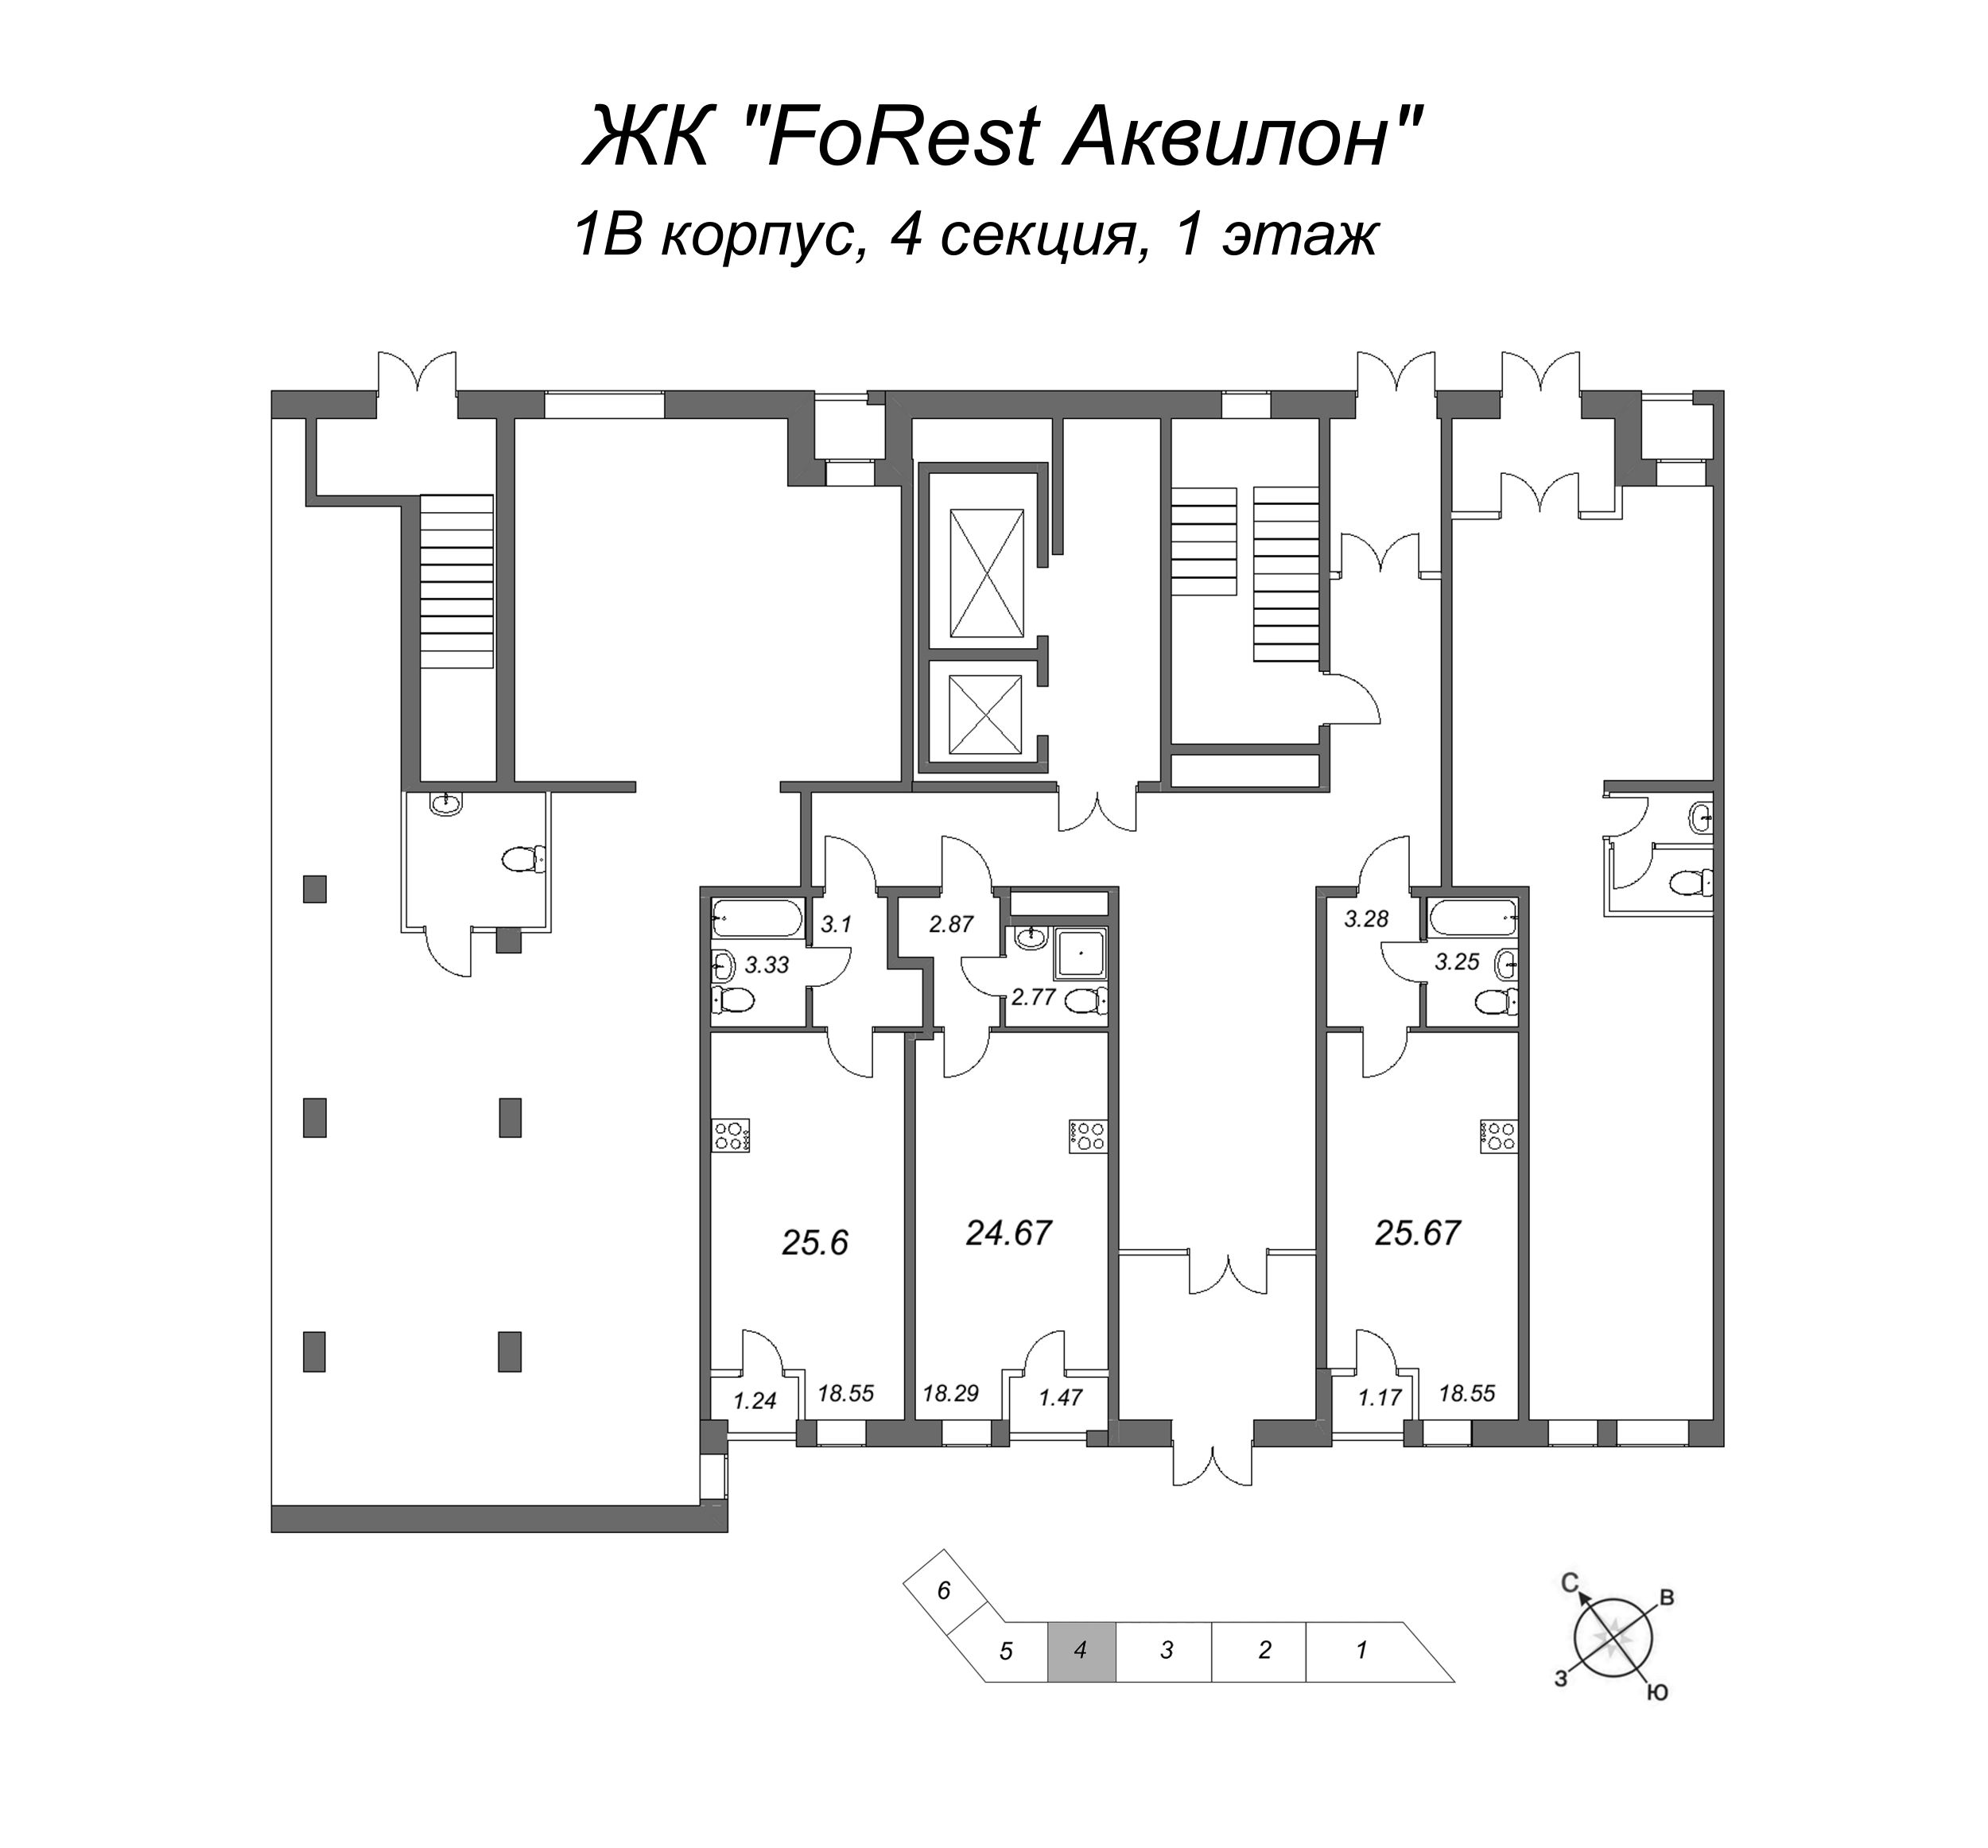 Квартира-студия, 25.2 м² в ЖК "FoRest Аквилон" - планировка этажа